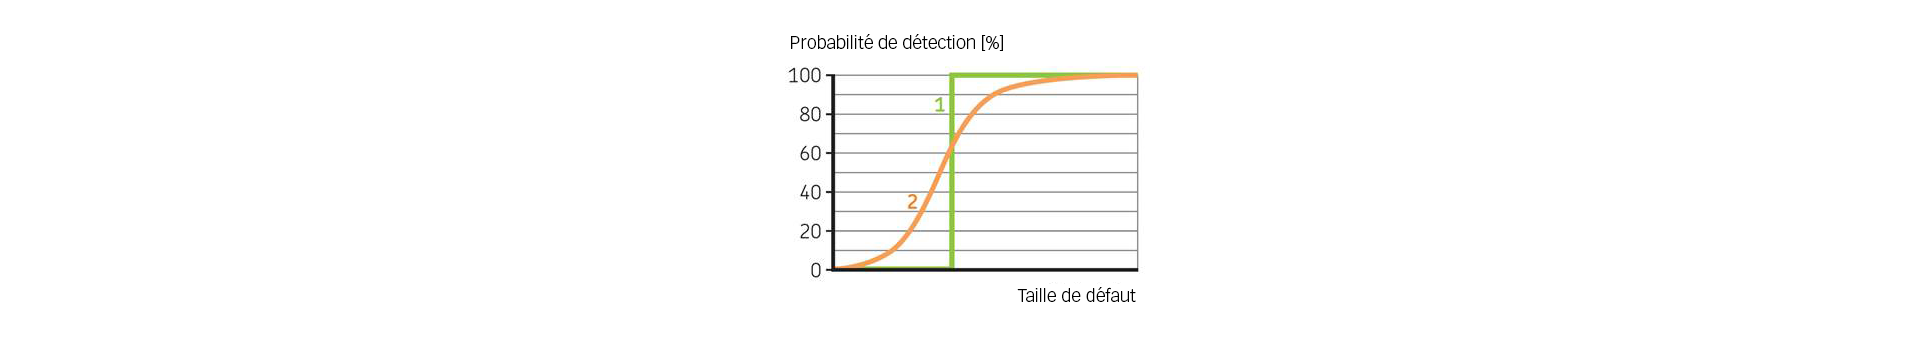 Fig. 6. Principes d’une courbe de probabilité de détection. 1 : Situation théorique : tous les défauts au-dessus d’une certaine taille sont détectés. 2 : Situation réaliste : des défauts au-dessus d’une certaine taille sont détectés avec une probabilité inférieure à 100 %.